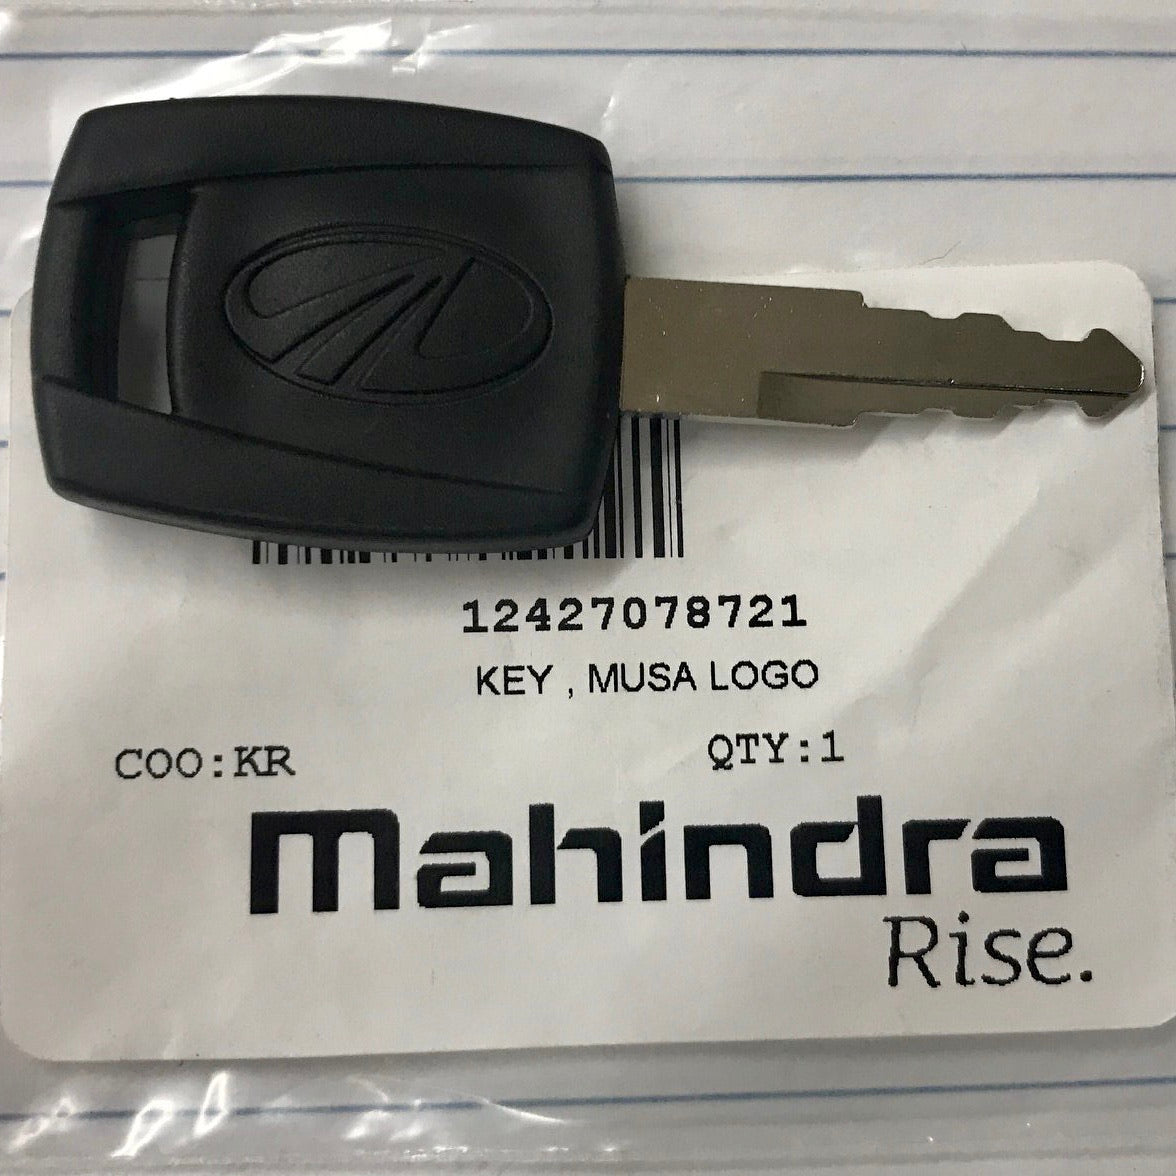 Mahindra Tractor Keys